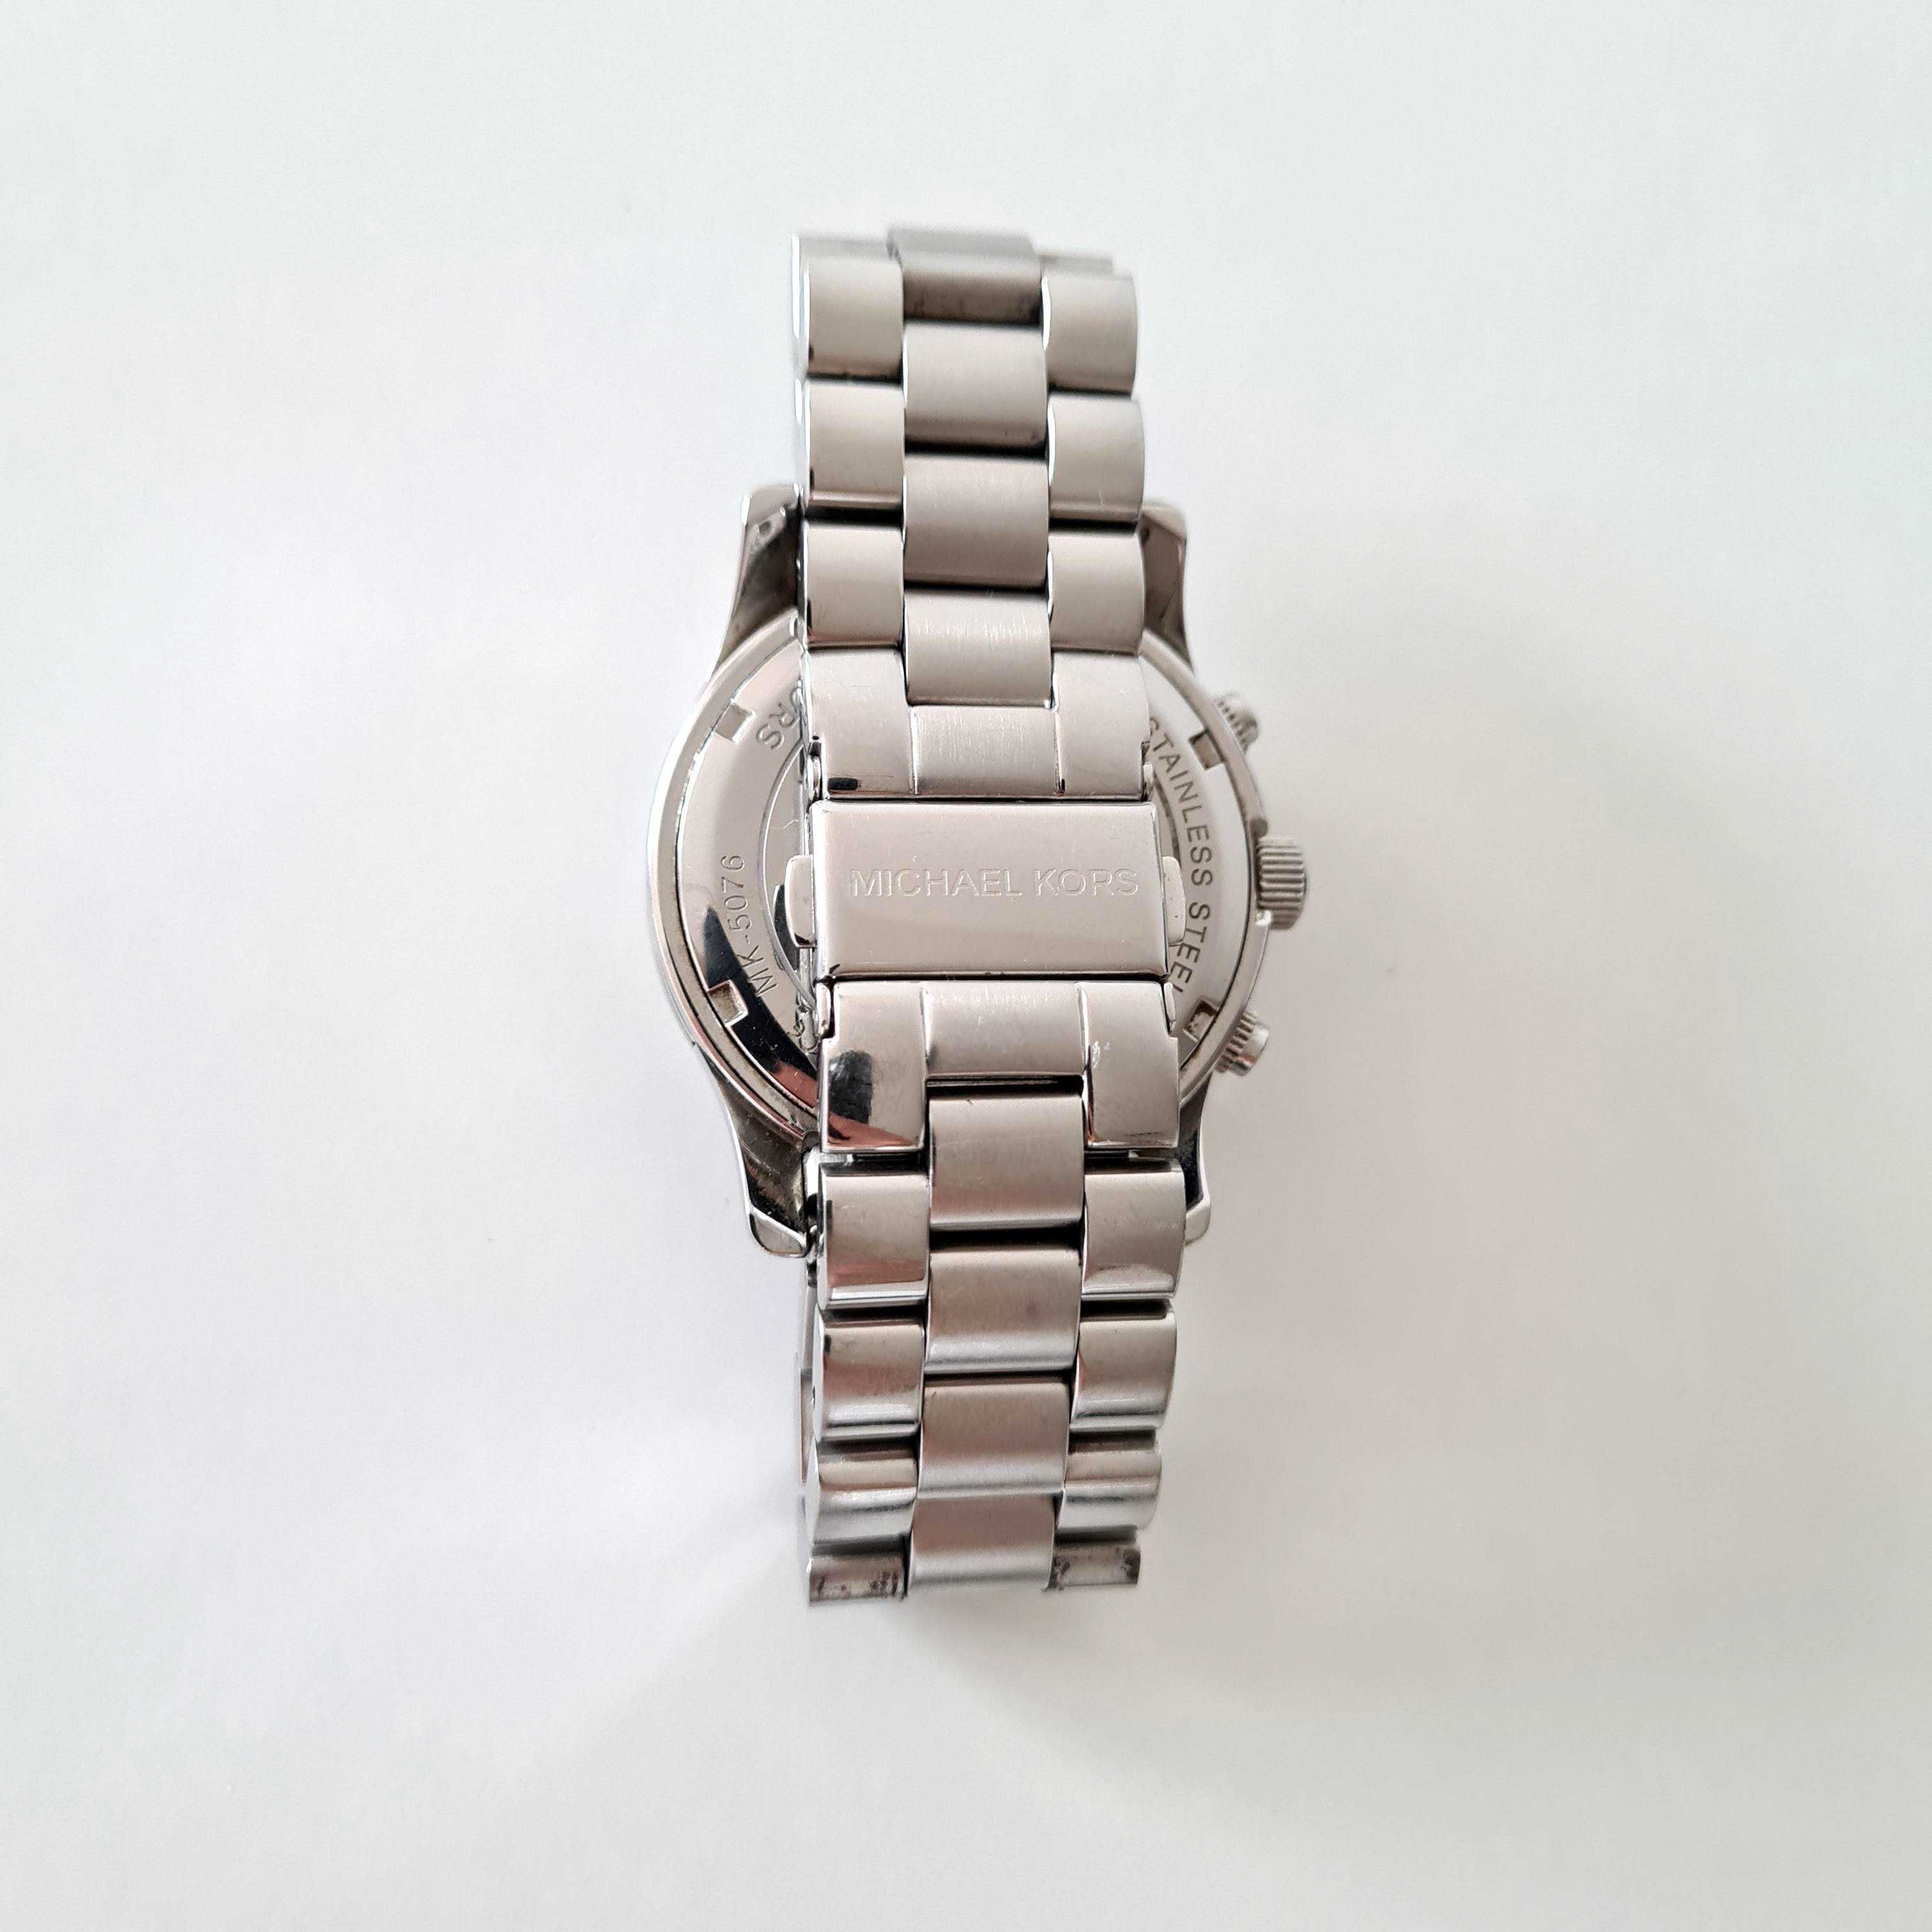 Michael Kors zegarek damski srebrny bransoleta MK5076